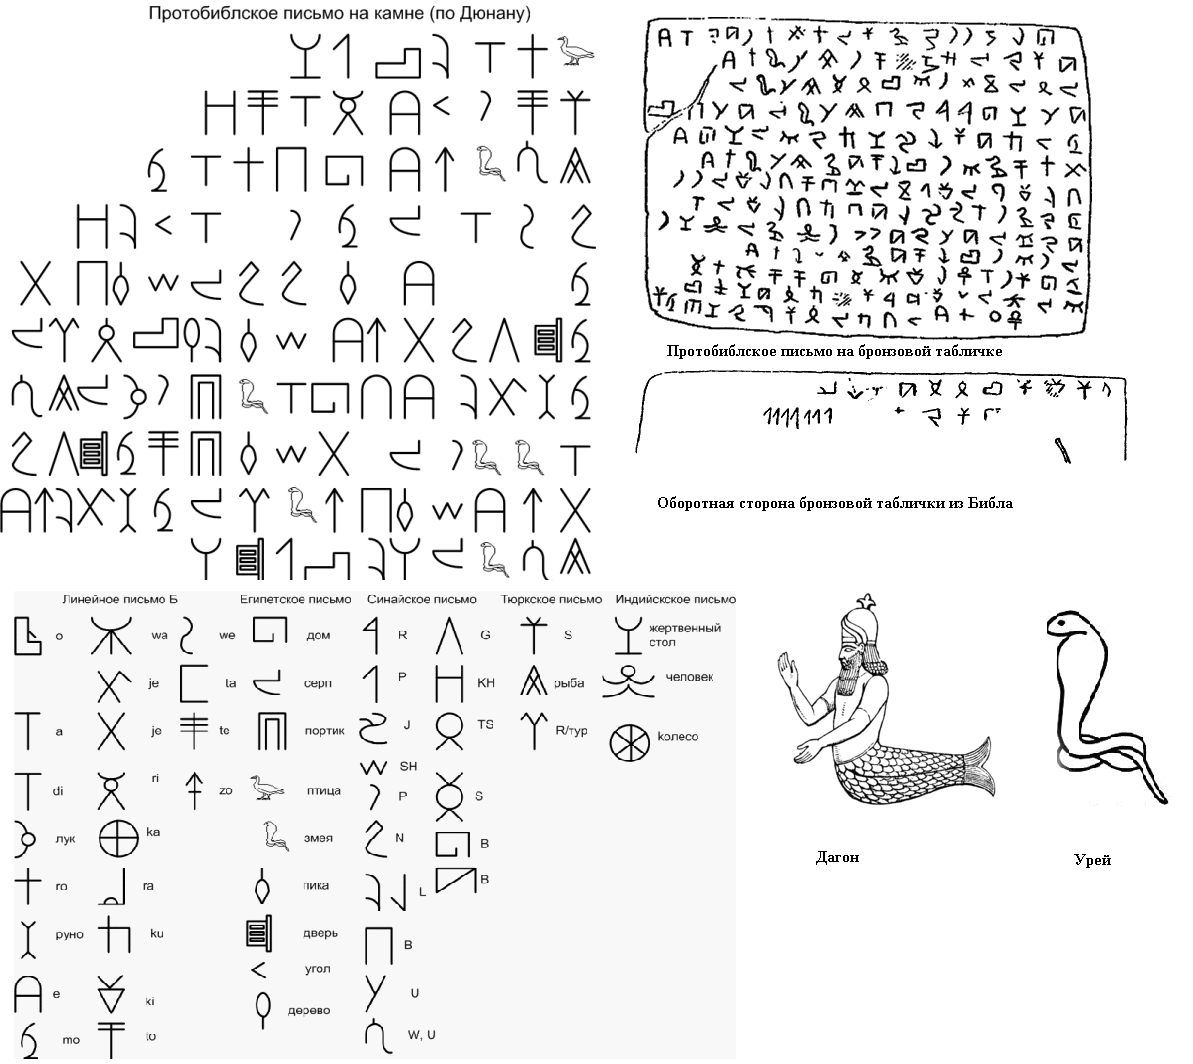 Где был изобретен древнейший алфавит на карте. Происхождение алфавита. Линейное письмо а.